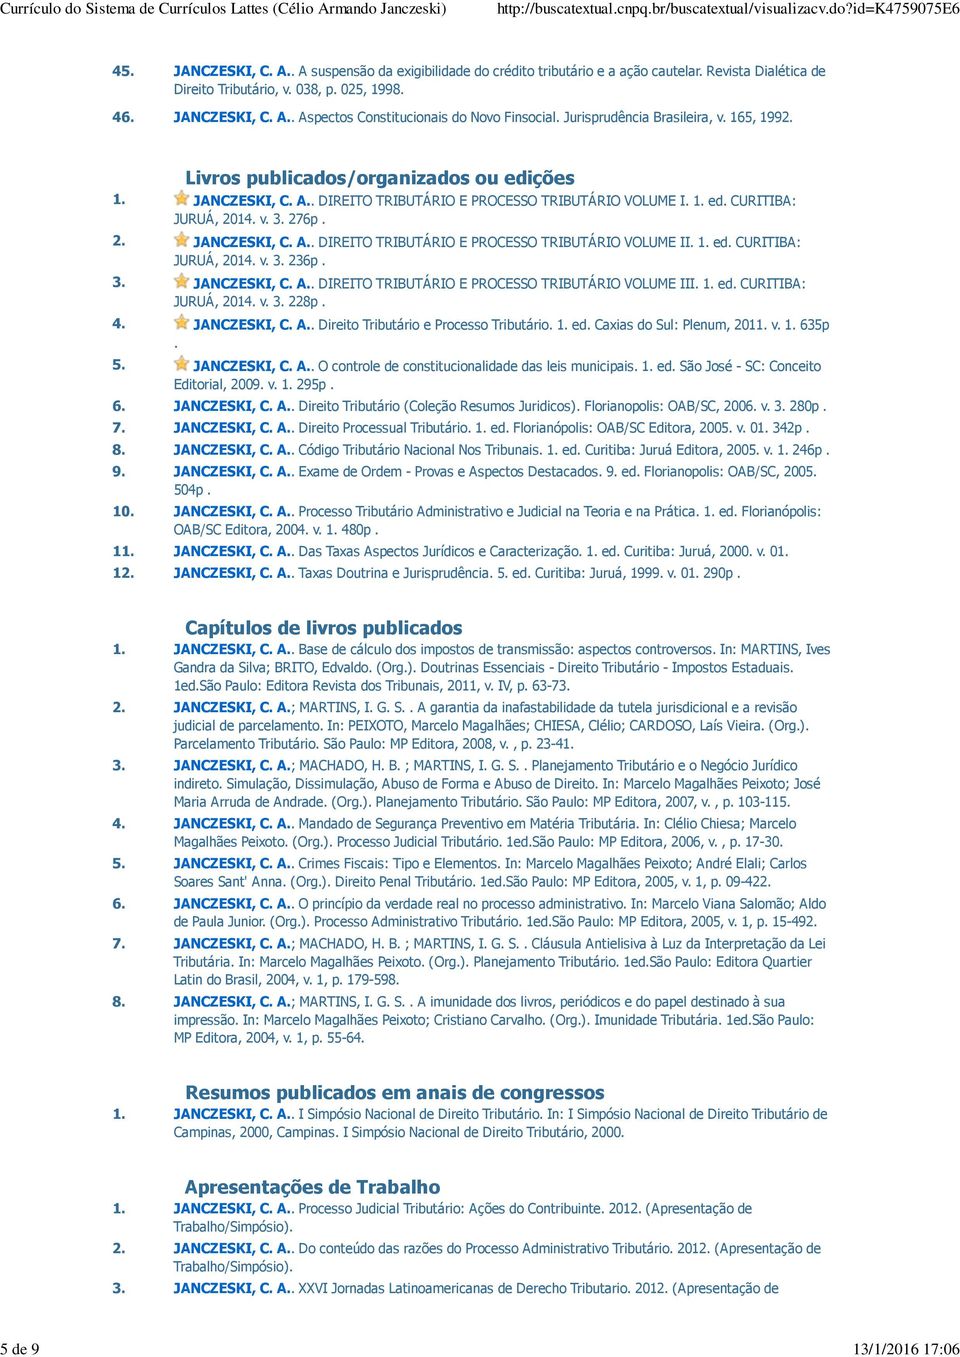 1. ed. CURITIBA: JURUÁ, 2014. v. 3. 236p. 3. JANCZESKI, C. A.. DIREITO TRIBUTÁRIO E PROCESSO TRIBUTÁRIO VOLUME III. 1. ed. CURITIBA: JURUÁ, 2014. v. 3. 228p. 4. JANCZESKI, C. A.. Direito Tributário e Processo Tributário.